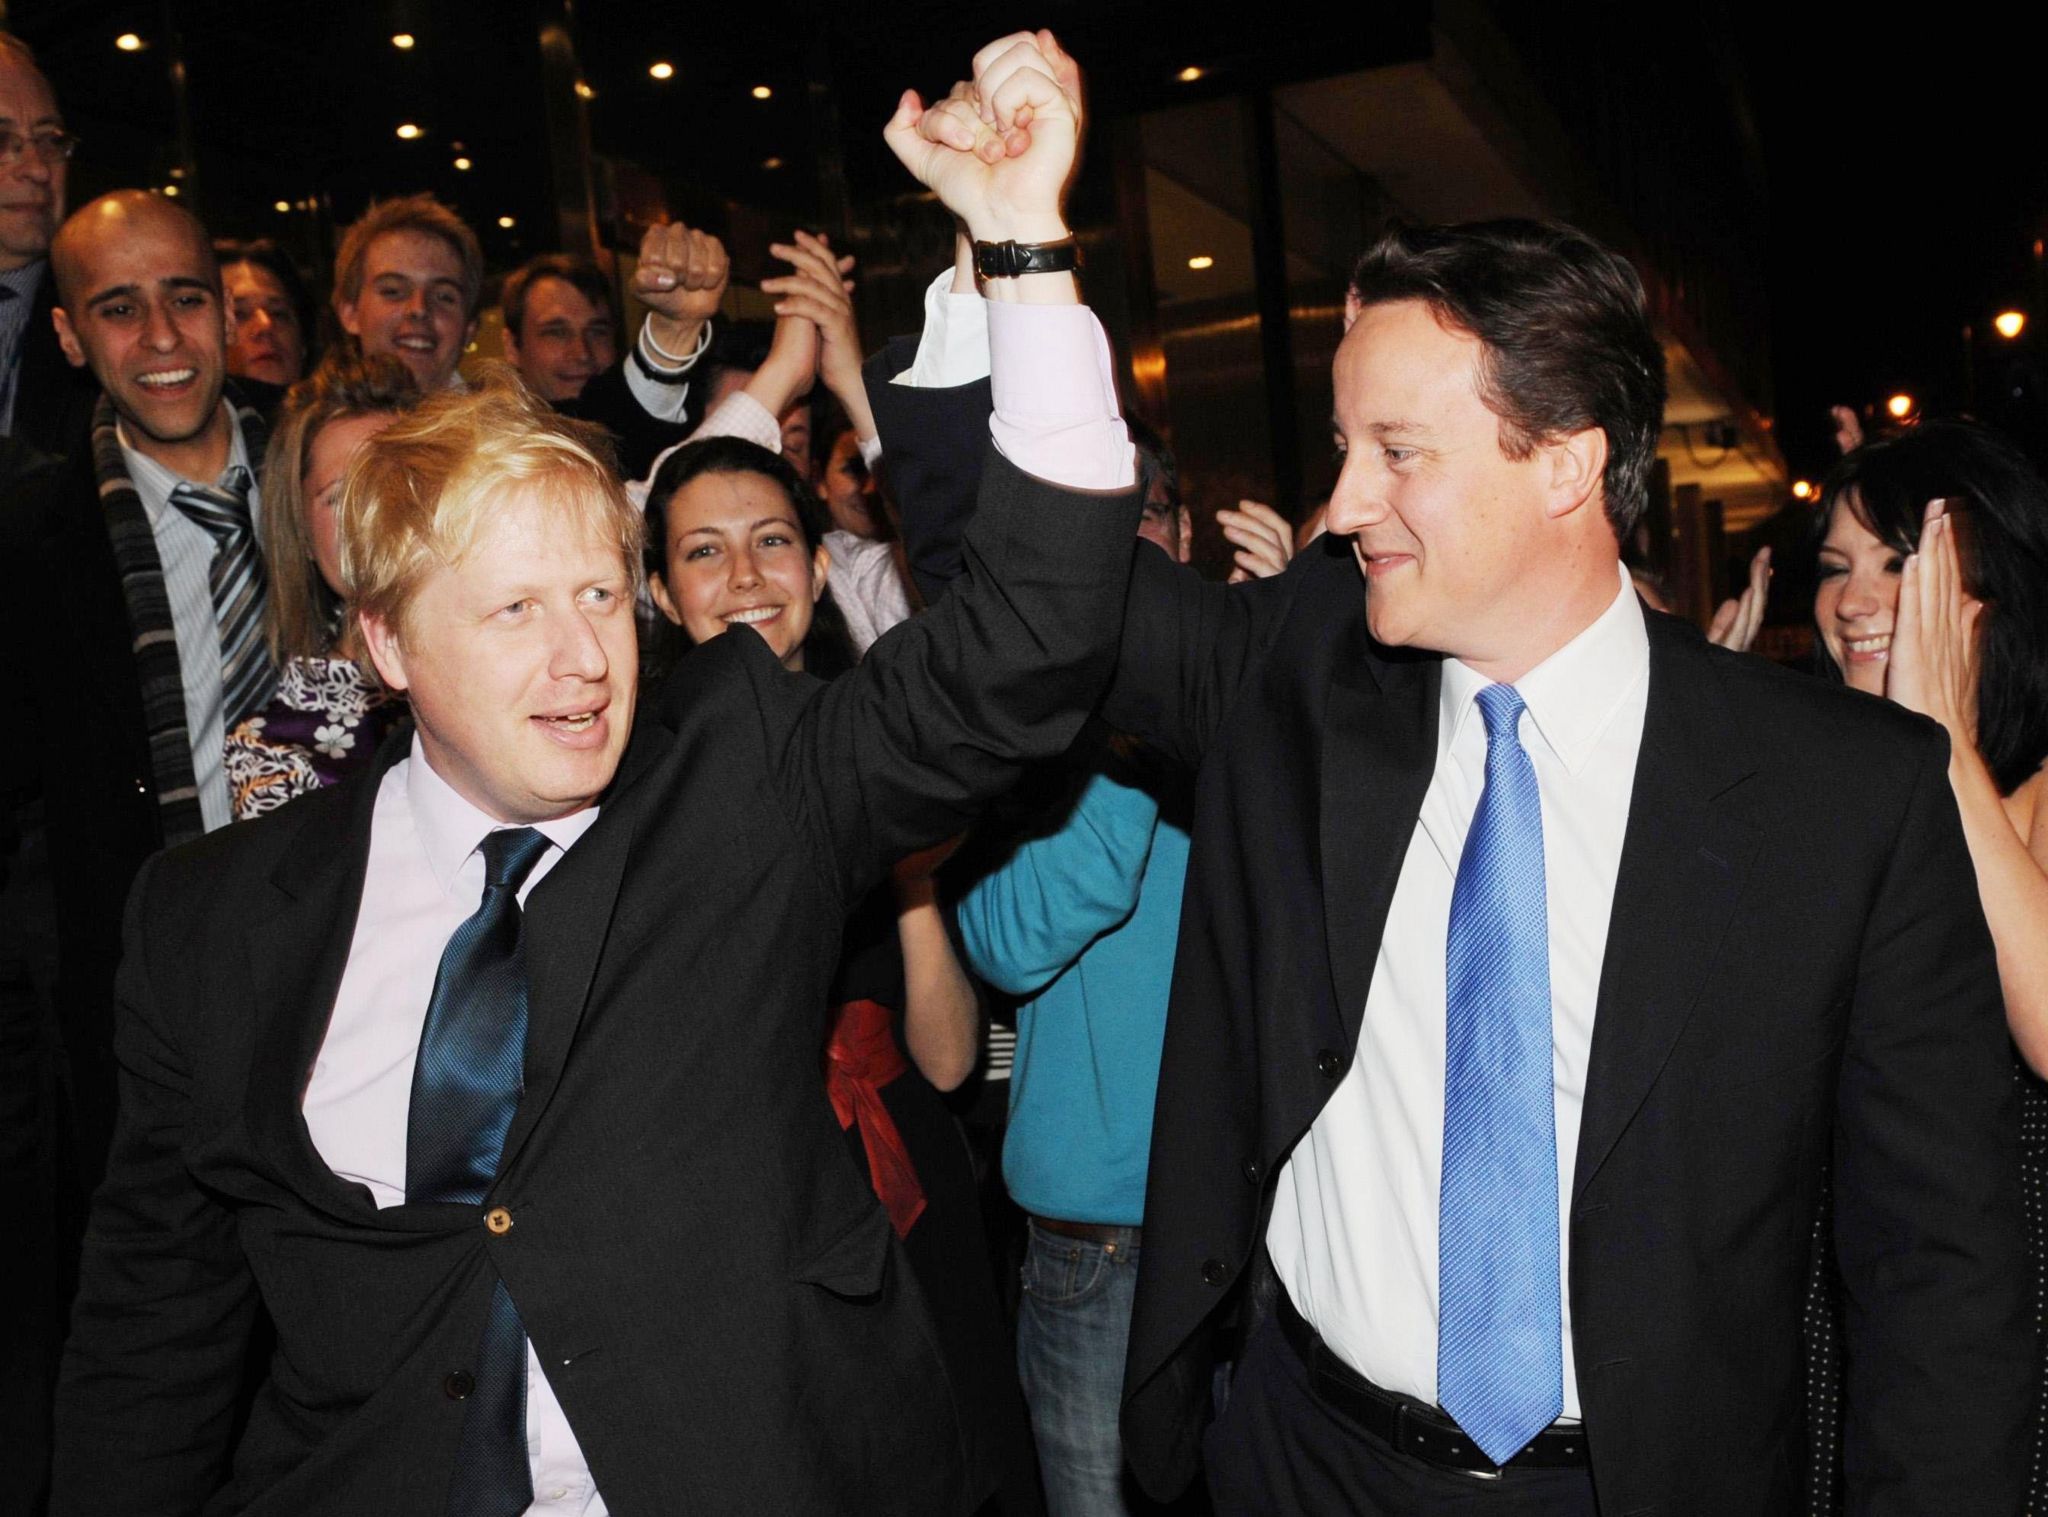 Udhëheqësi i Partisë Konservatore, David Cameron, uron Boris Johnson që u bë kryebashkiak i Londrës në selinë e konservatorëve në Londrën qendrore.